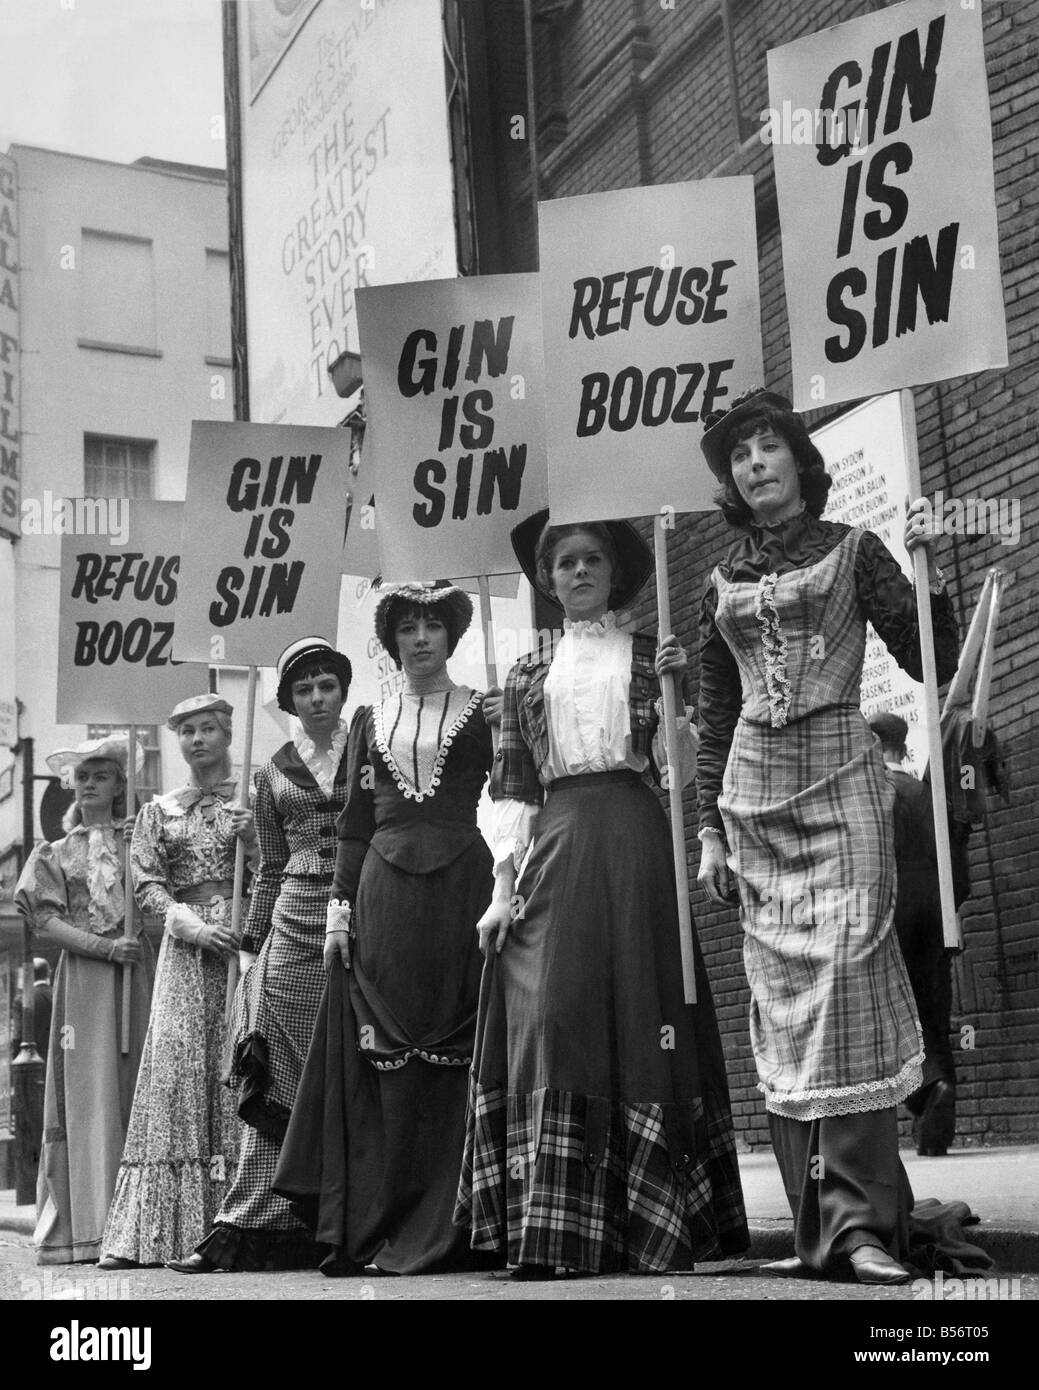 Frauen, gekleidet in historischer Kleidung Stand halten Banner protestieren gegen Alkohol. &#13; &#10; Juli 1965 &#13; &#10; P010053 Stockfoto